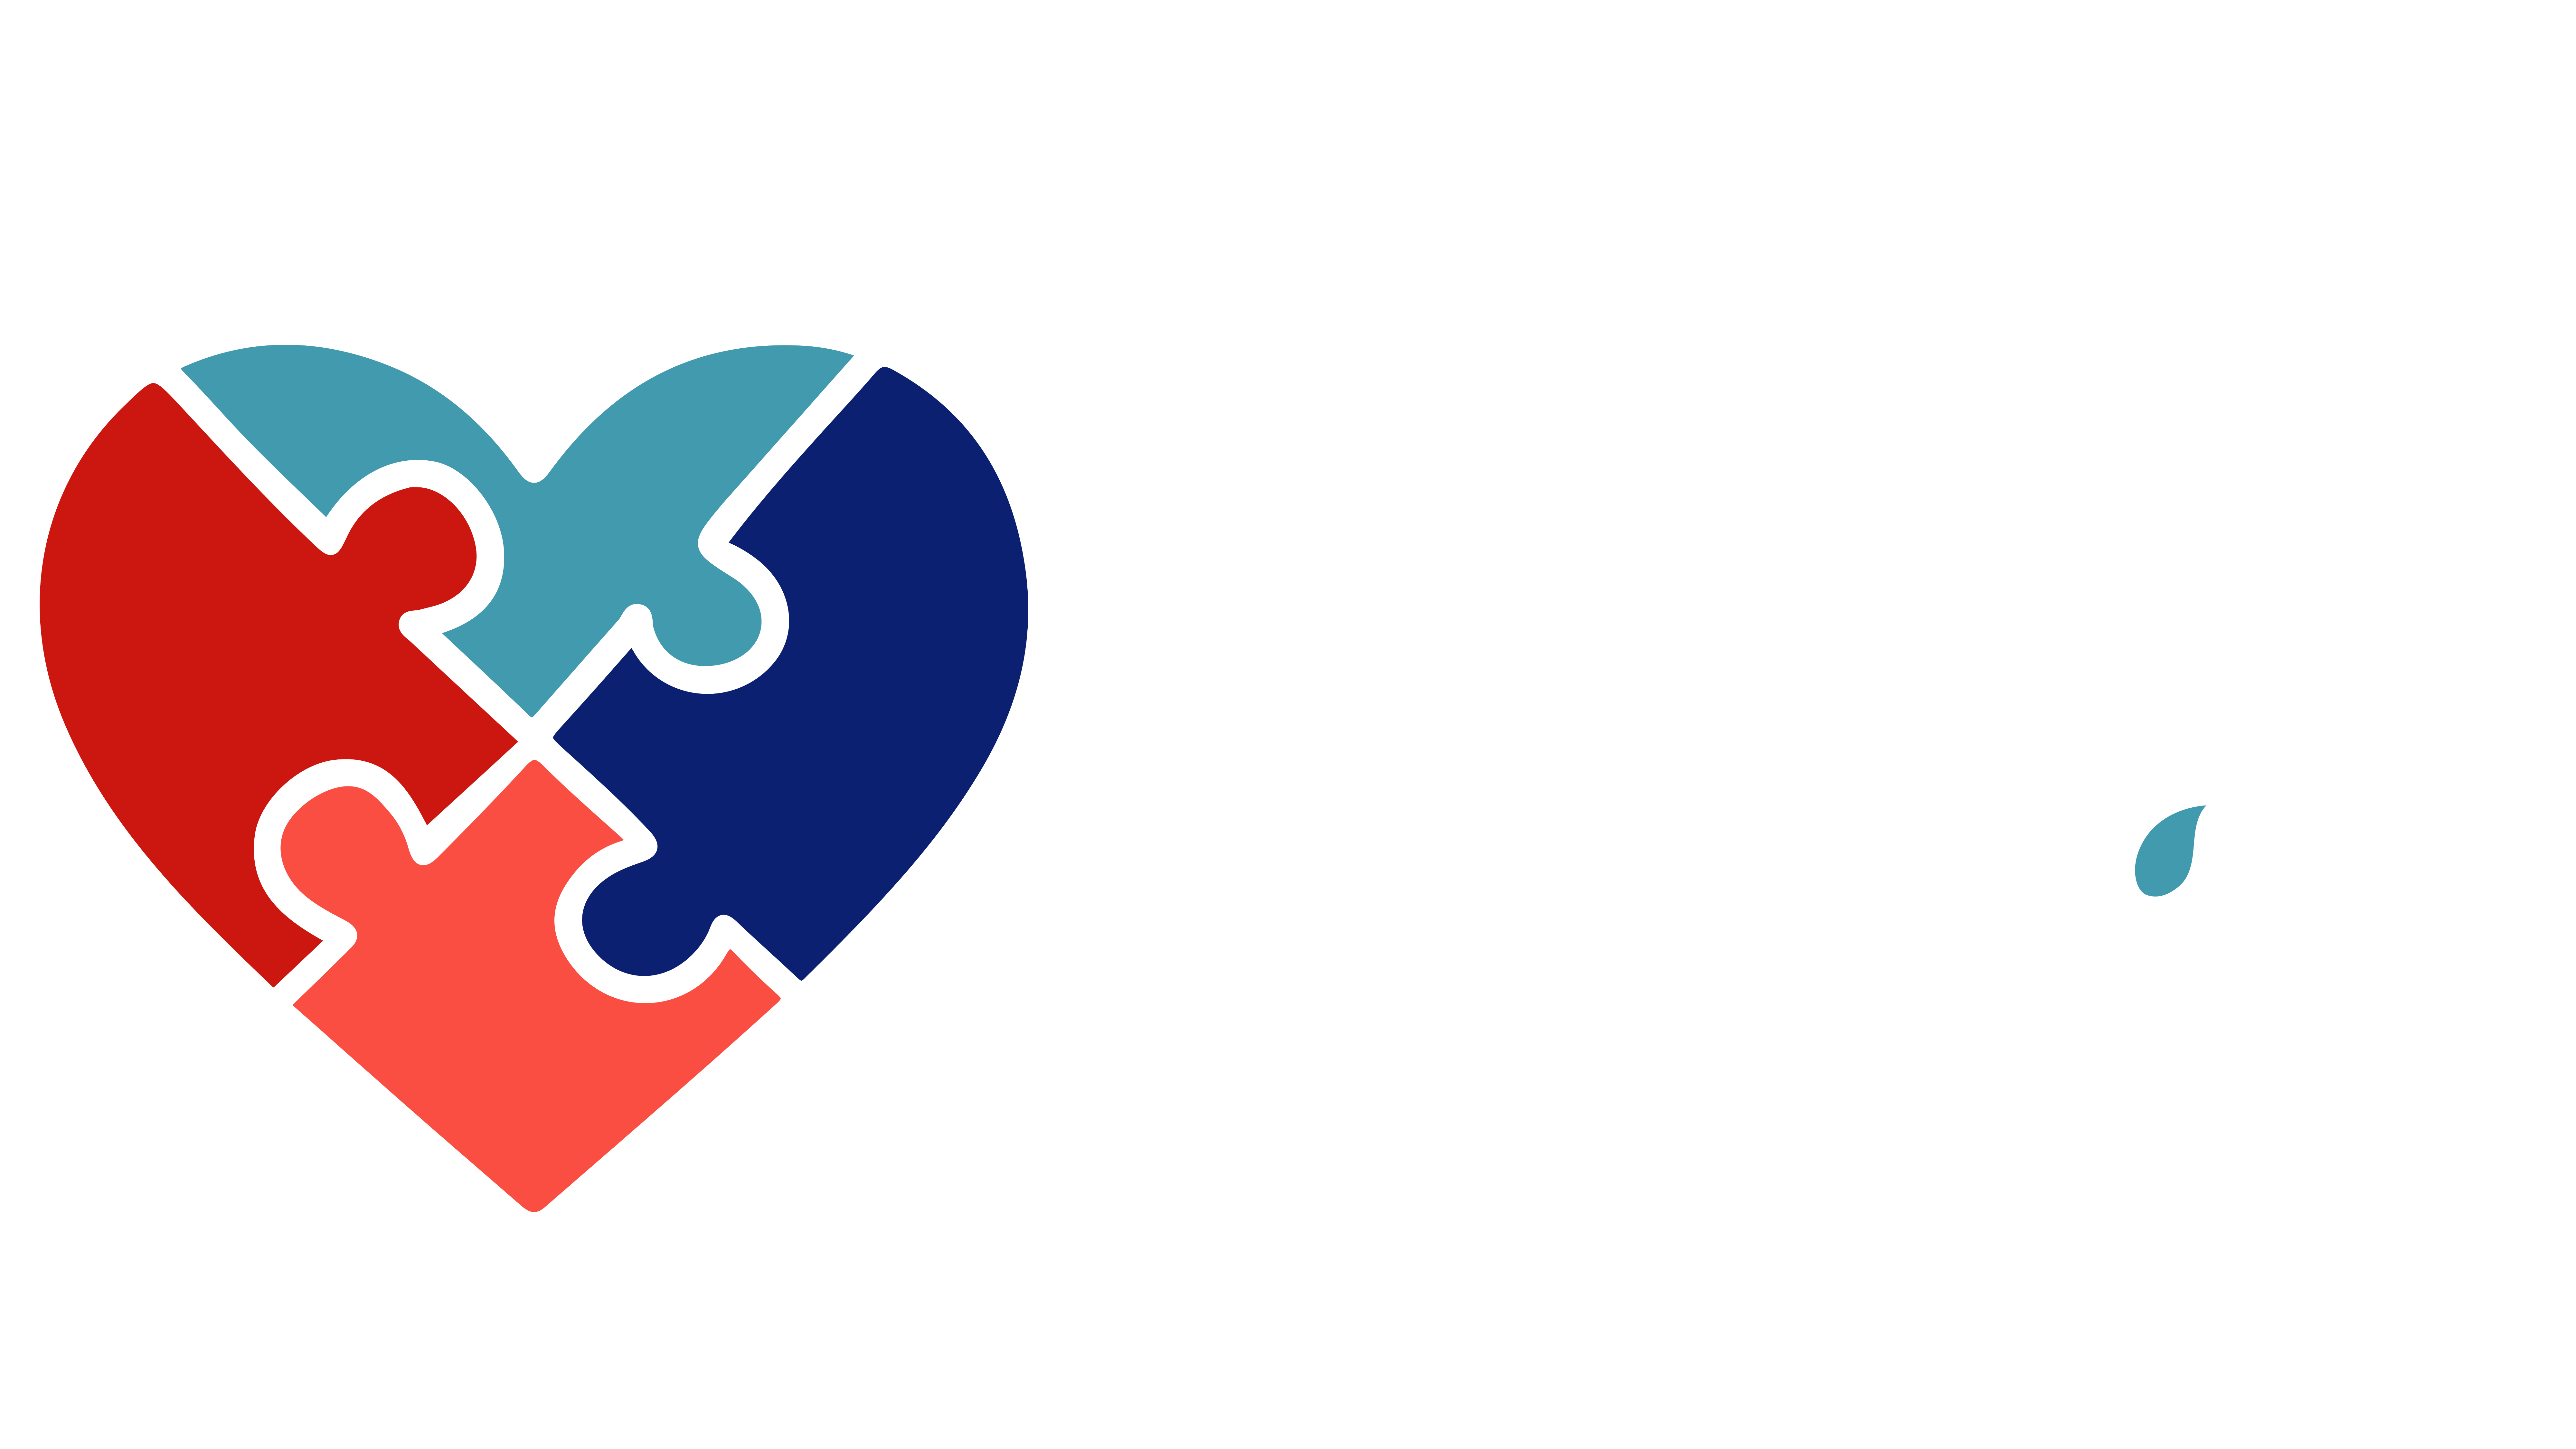 Dr Lagomarsino